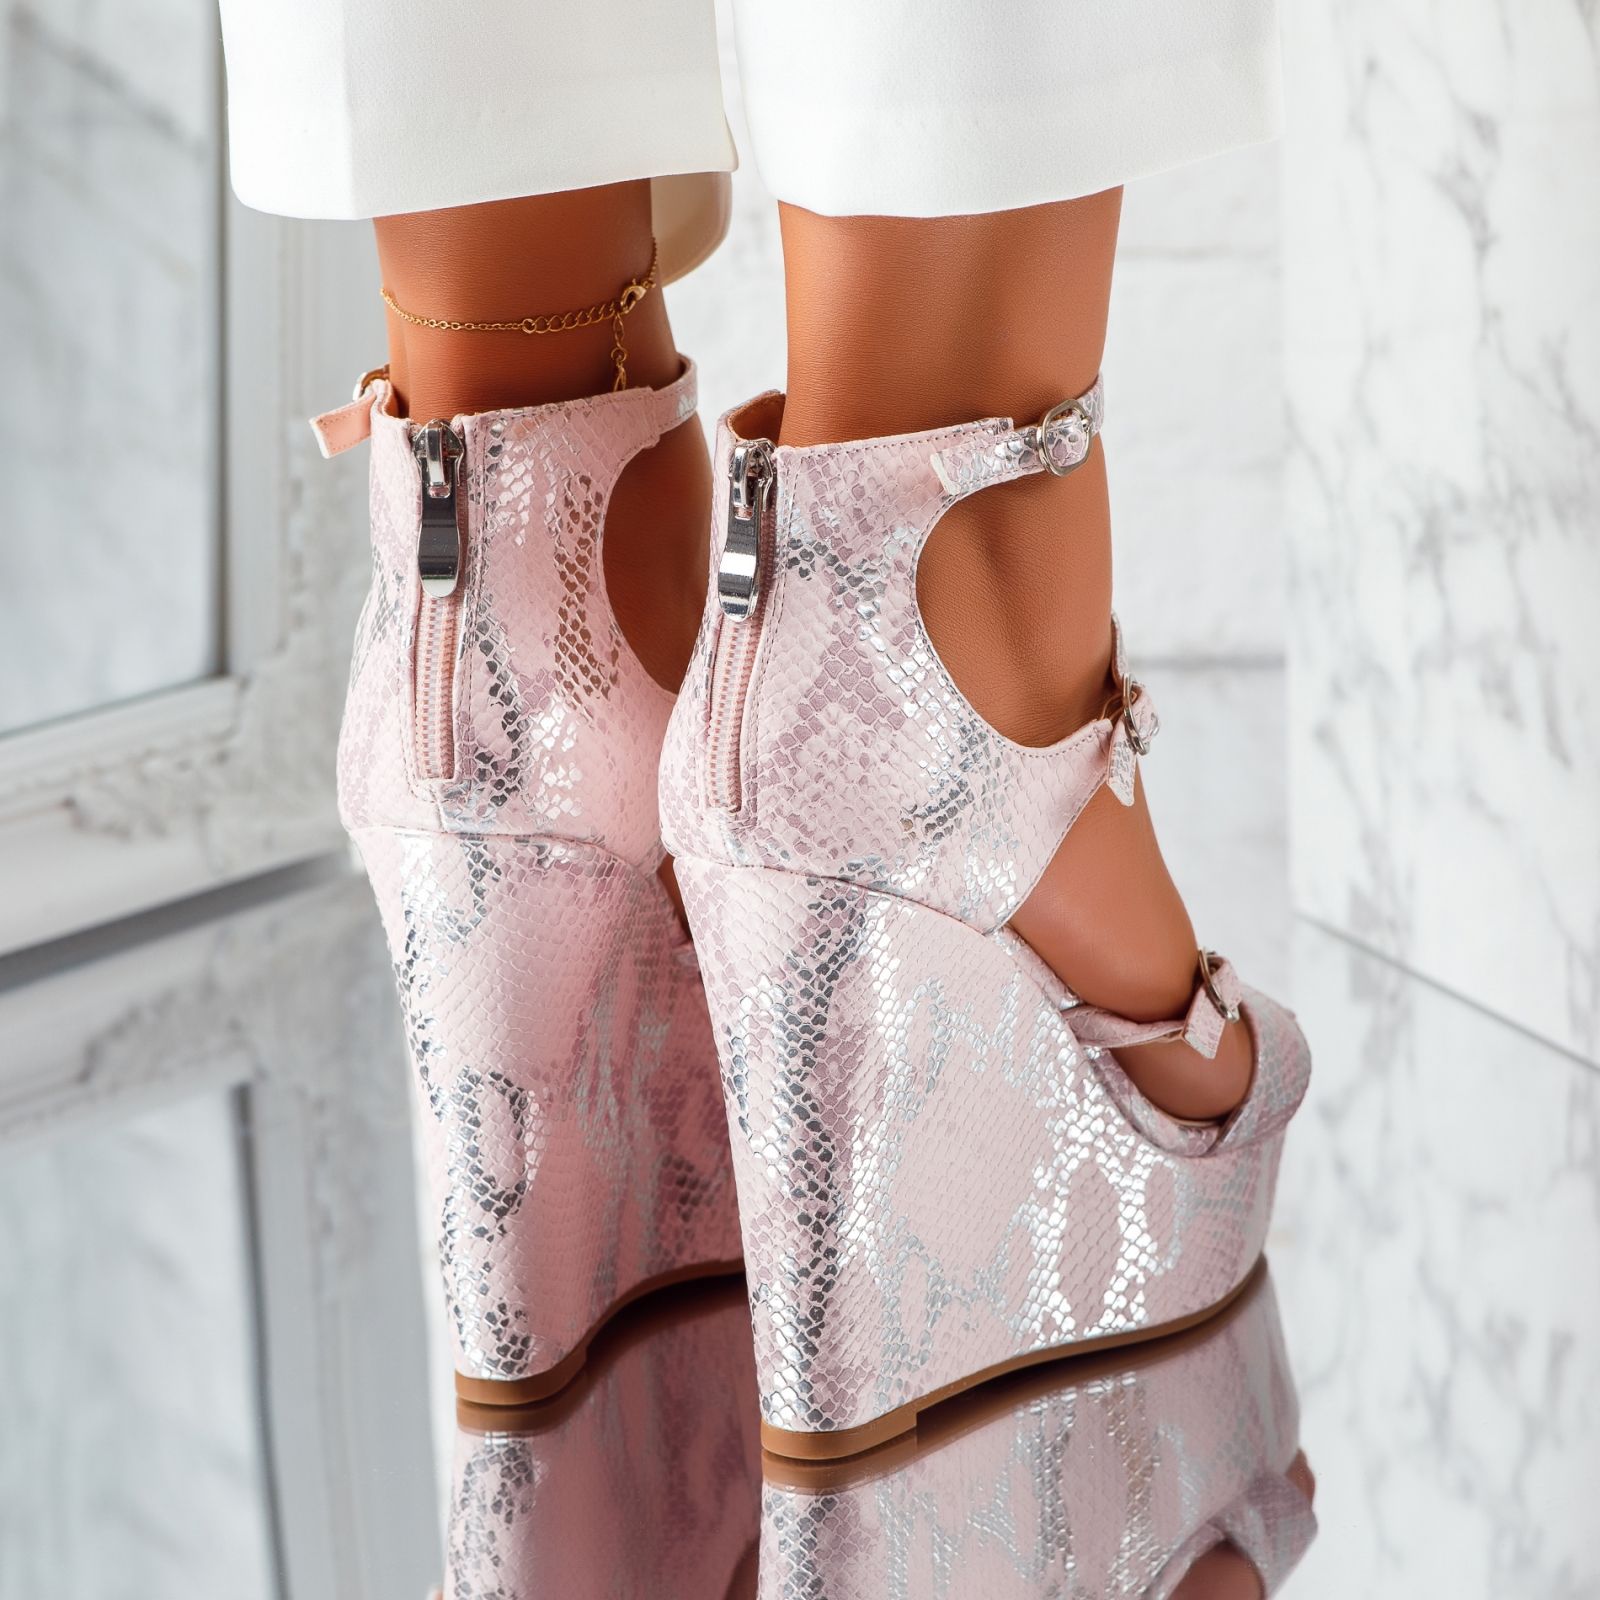 Дамски сандали с платформата Samira розово #5531M